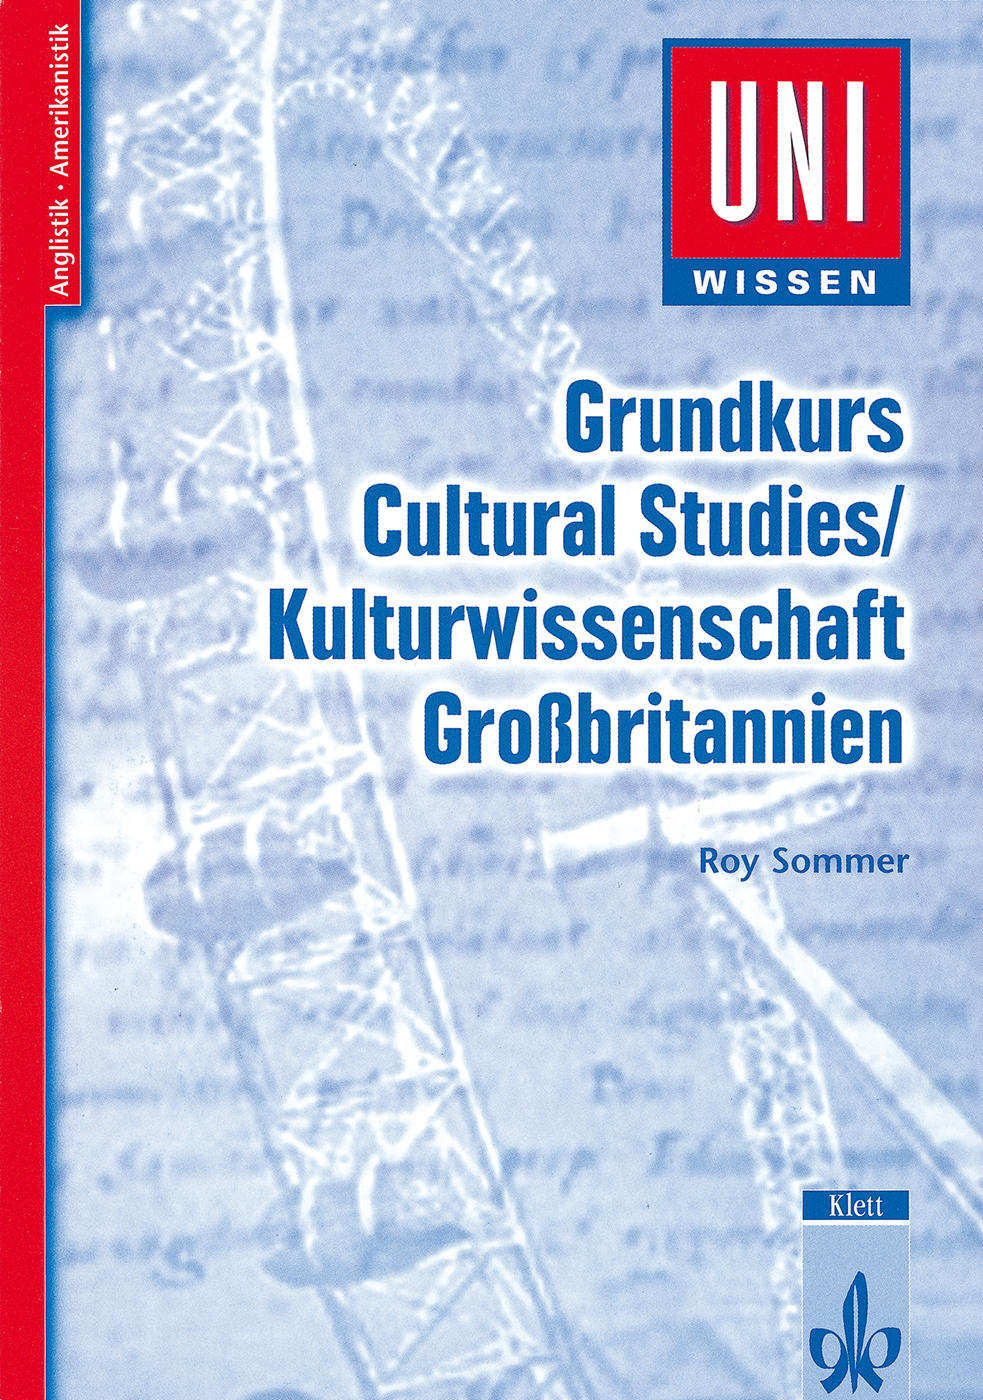 Uni Wissen Grundkurs Cultural Studies/Kulturwissenschaft Großbritannien